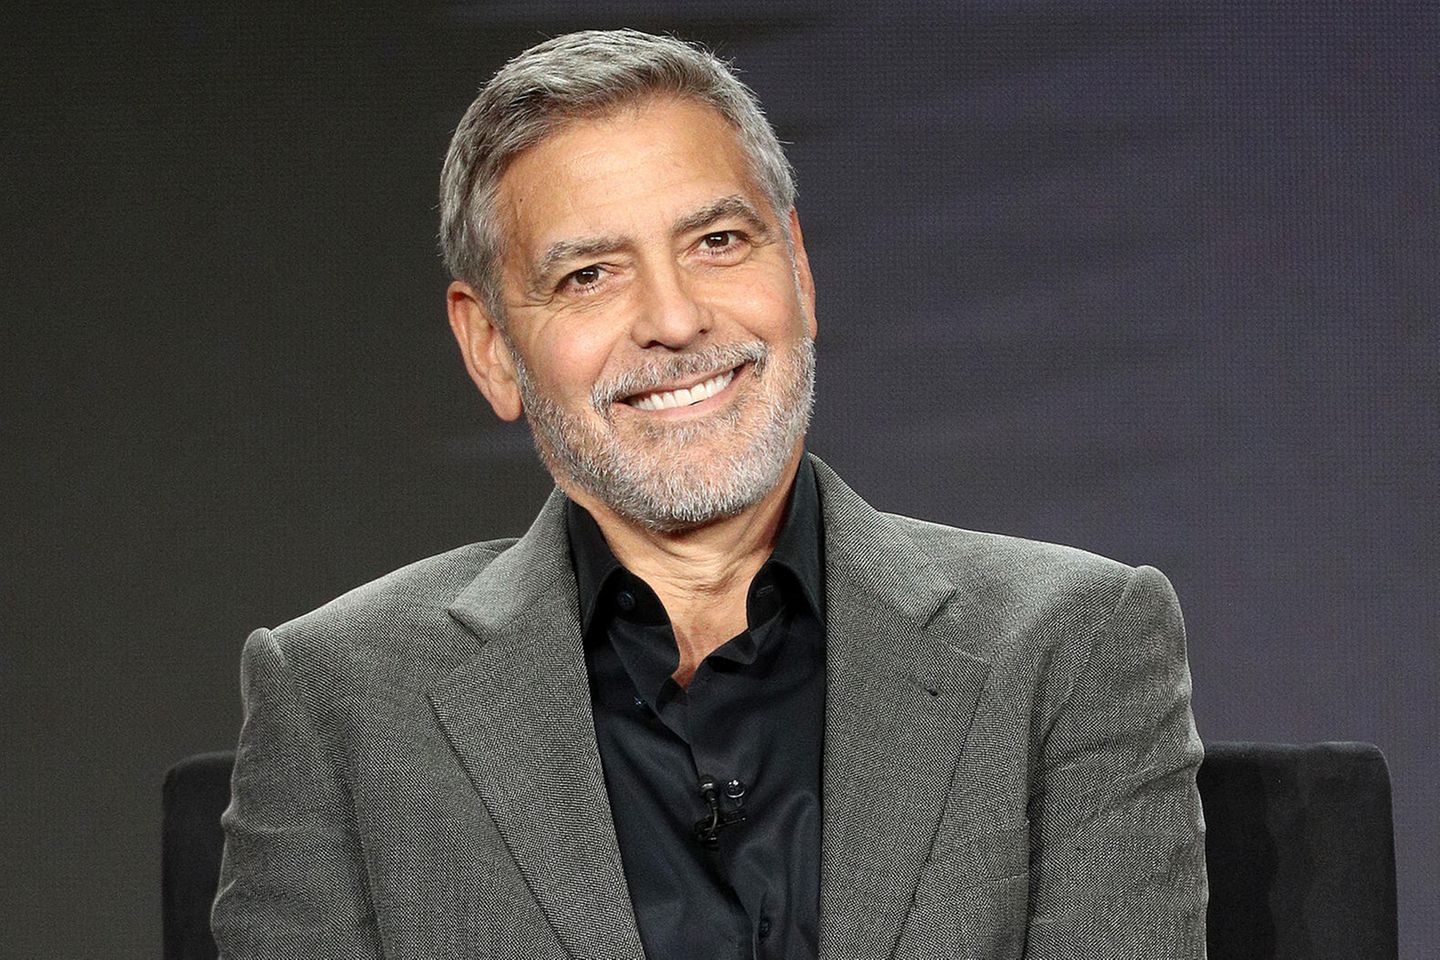 George Clooney verrät Details aus Quarantäne mit den Kids | GALA.de